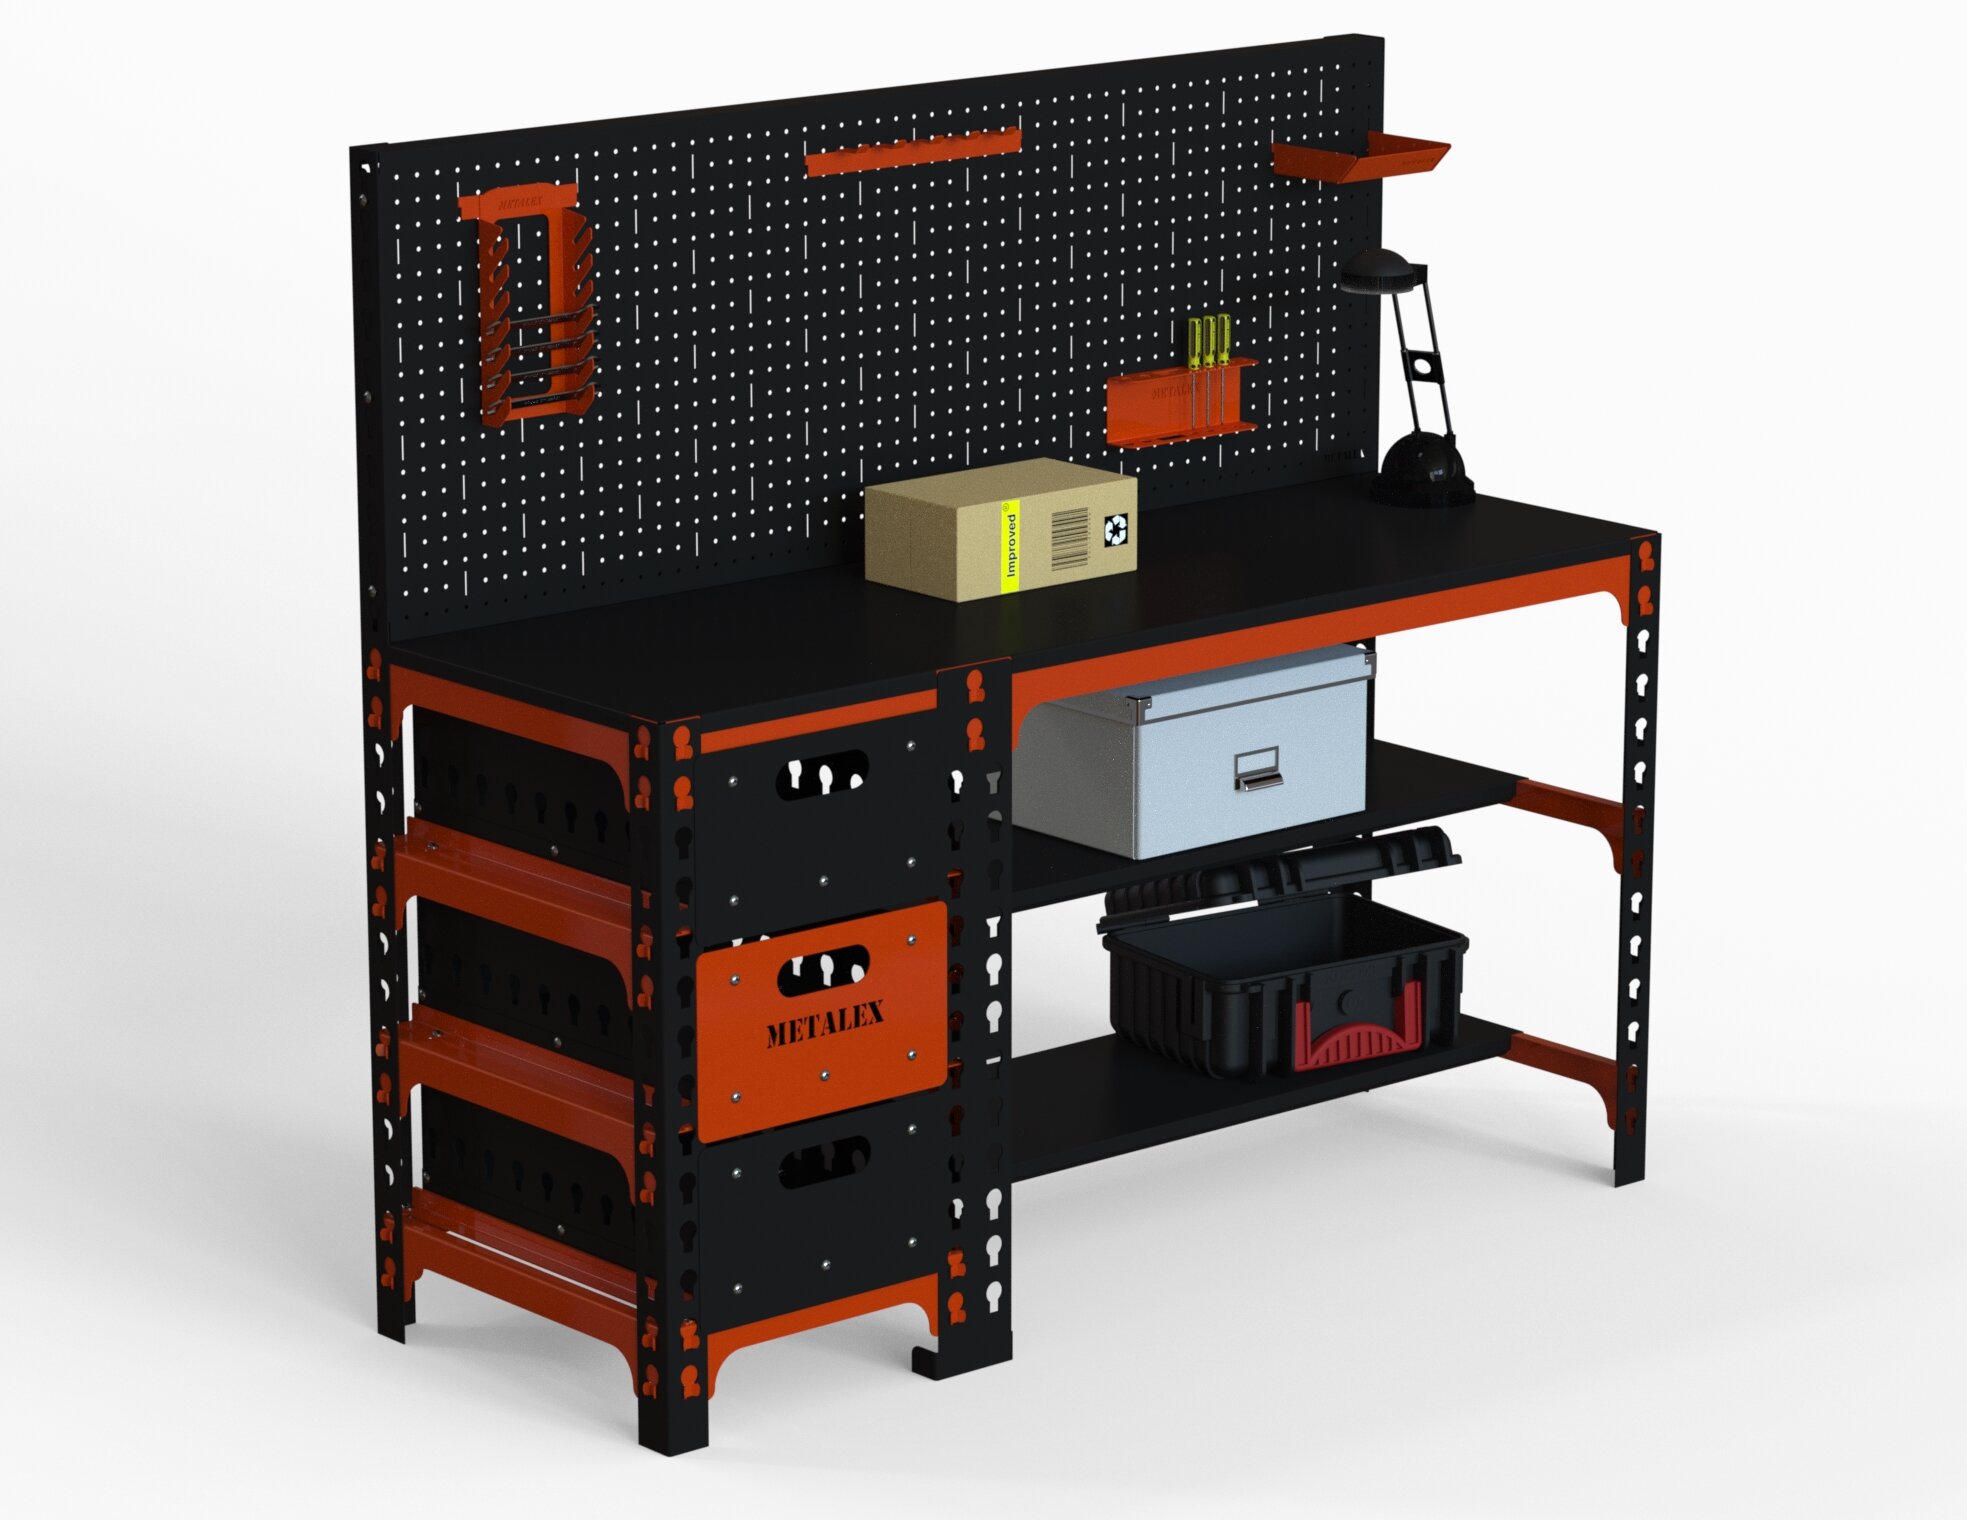 Стол металлический Metalex 750х1200х400 с выдвижными ящиками и перфопанелью (оранжево-чёрный)